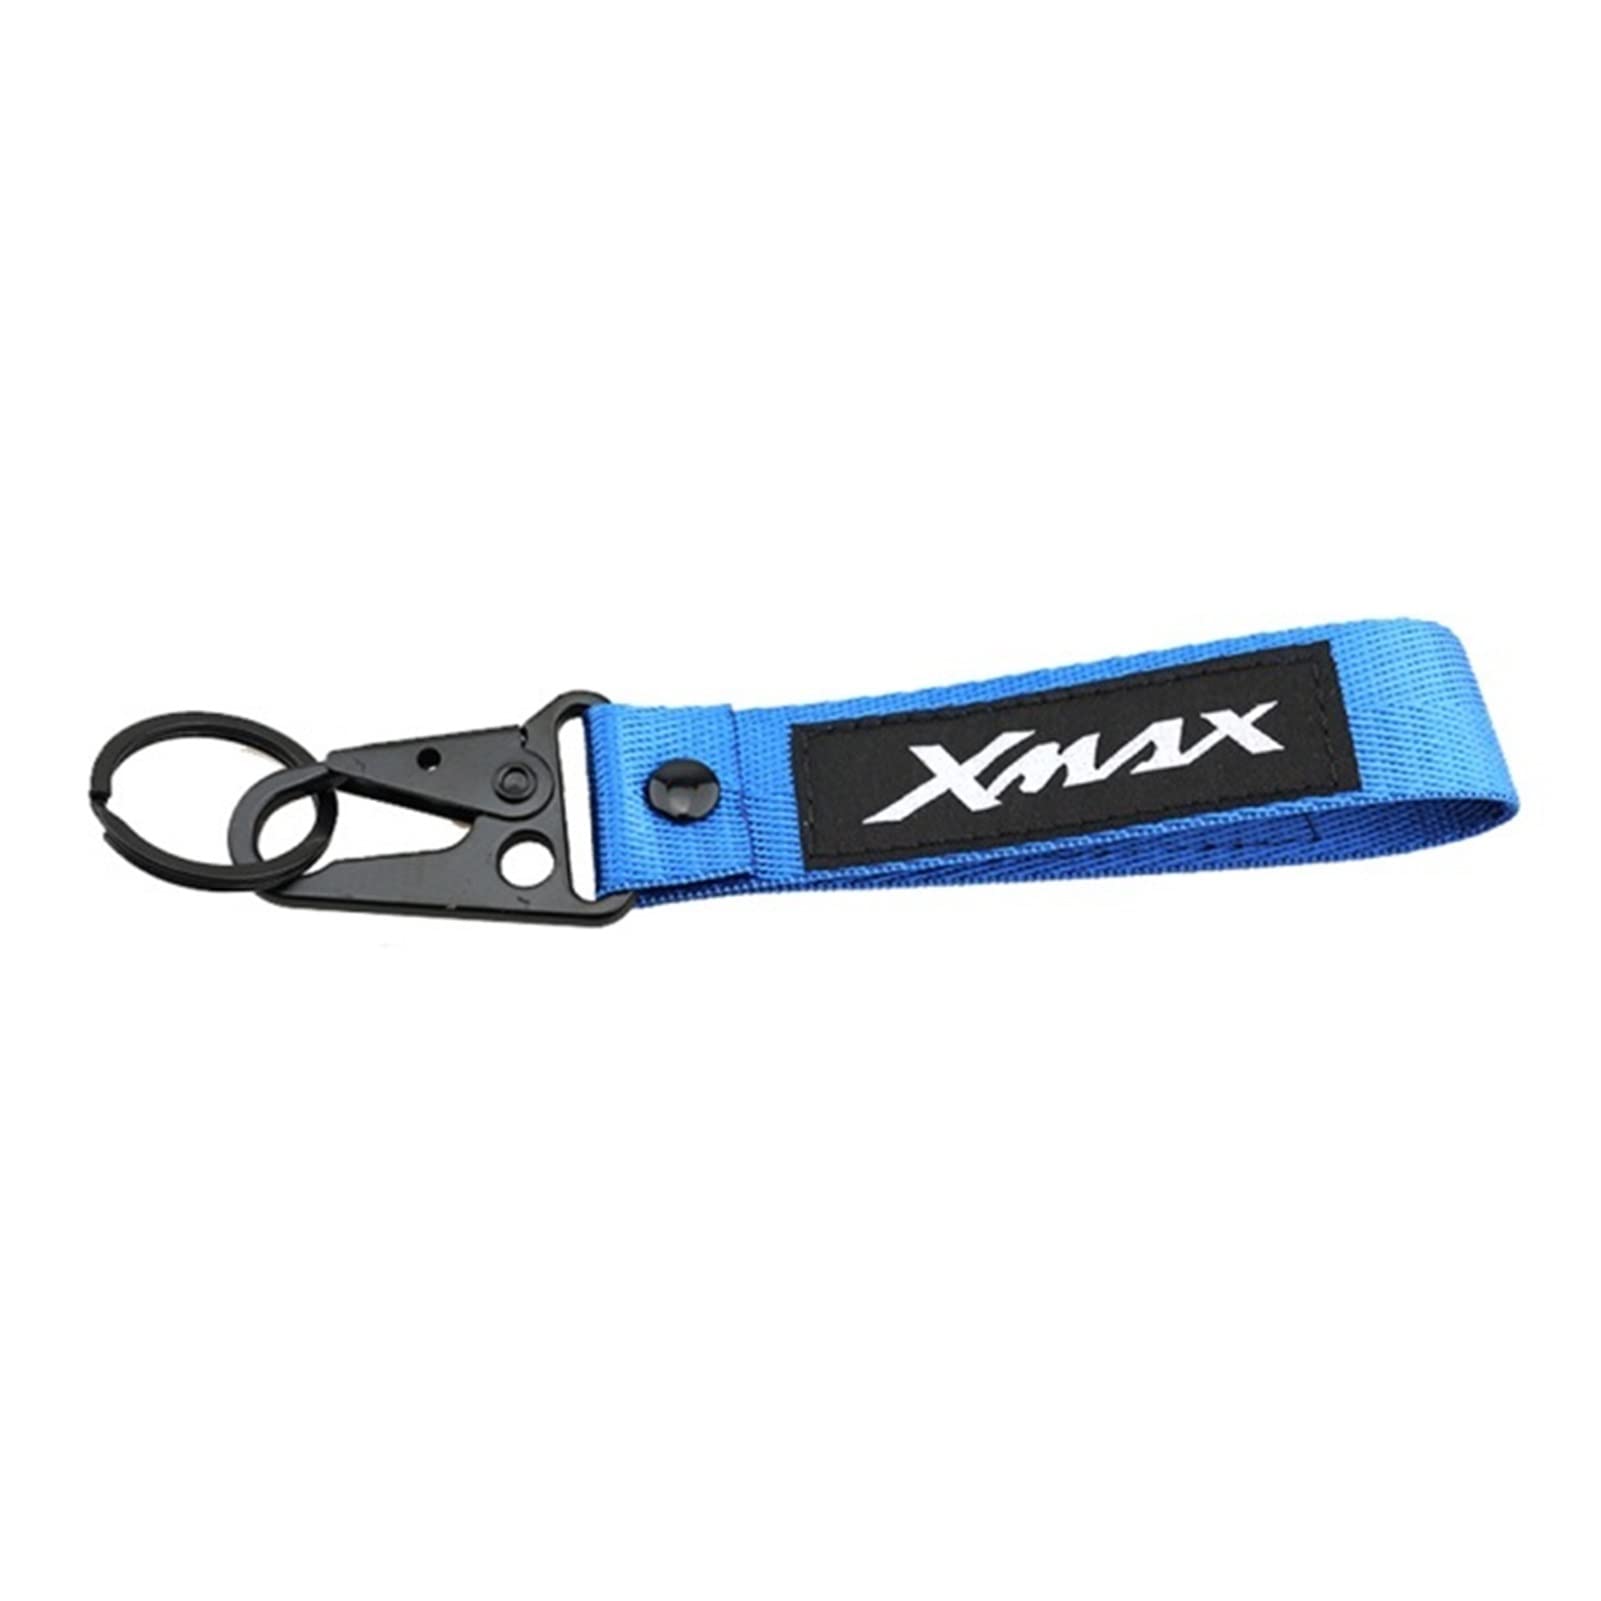 Motorrad Schlüsselanhänger Motorrad CNC Zubehör Stickerei Schlüsselanhänger Schlüsselanhänger Kette Schlüsselanhänger Für Yamaha Xmax X-MAX 125 250 300 400 (Farbe : Blau, Size : 1) von SXHM